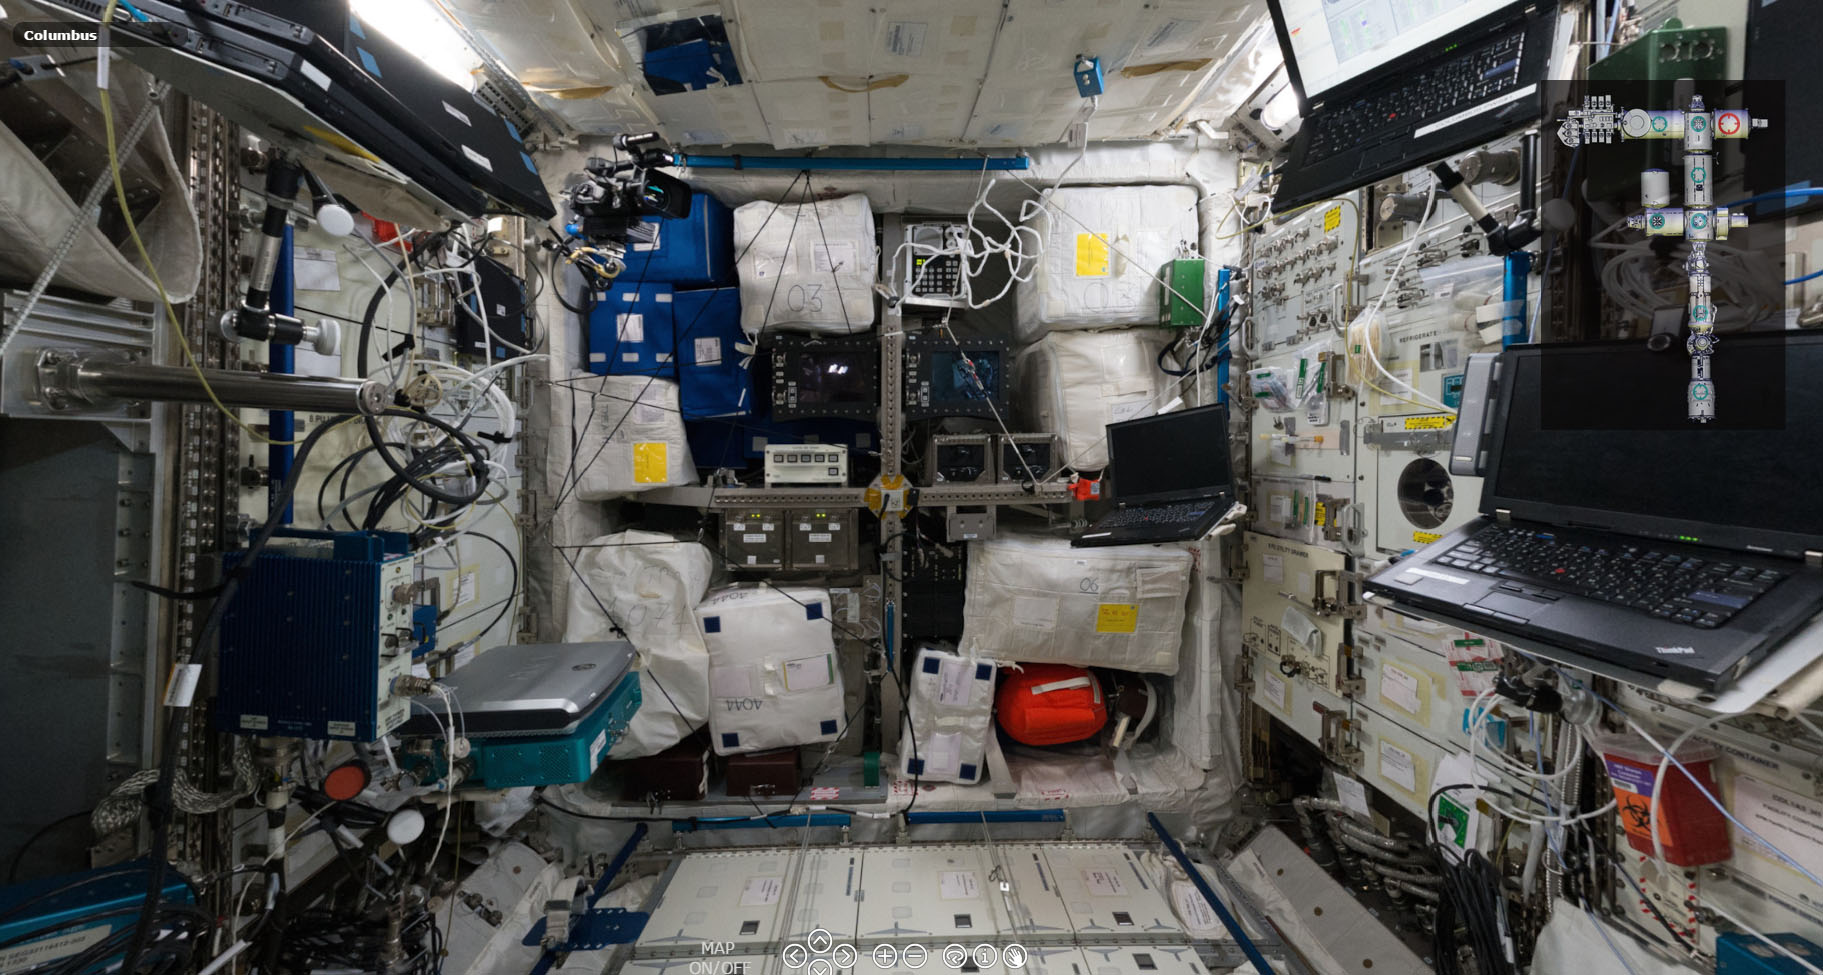 Tour panoramico estación espacial